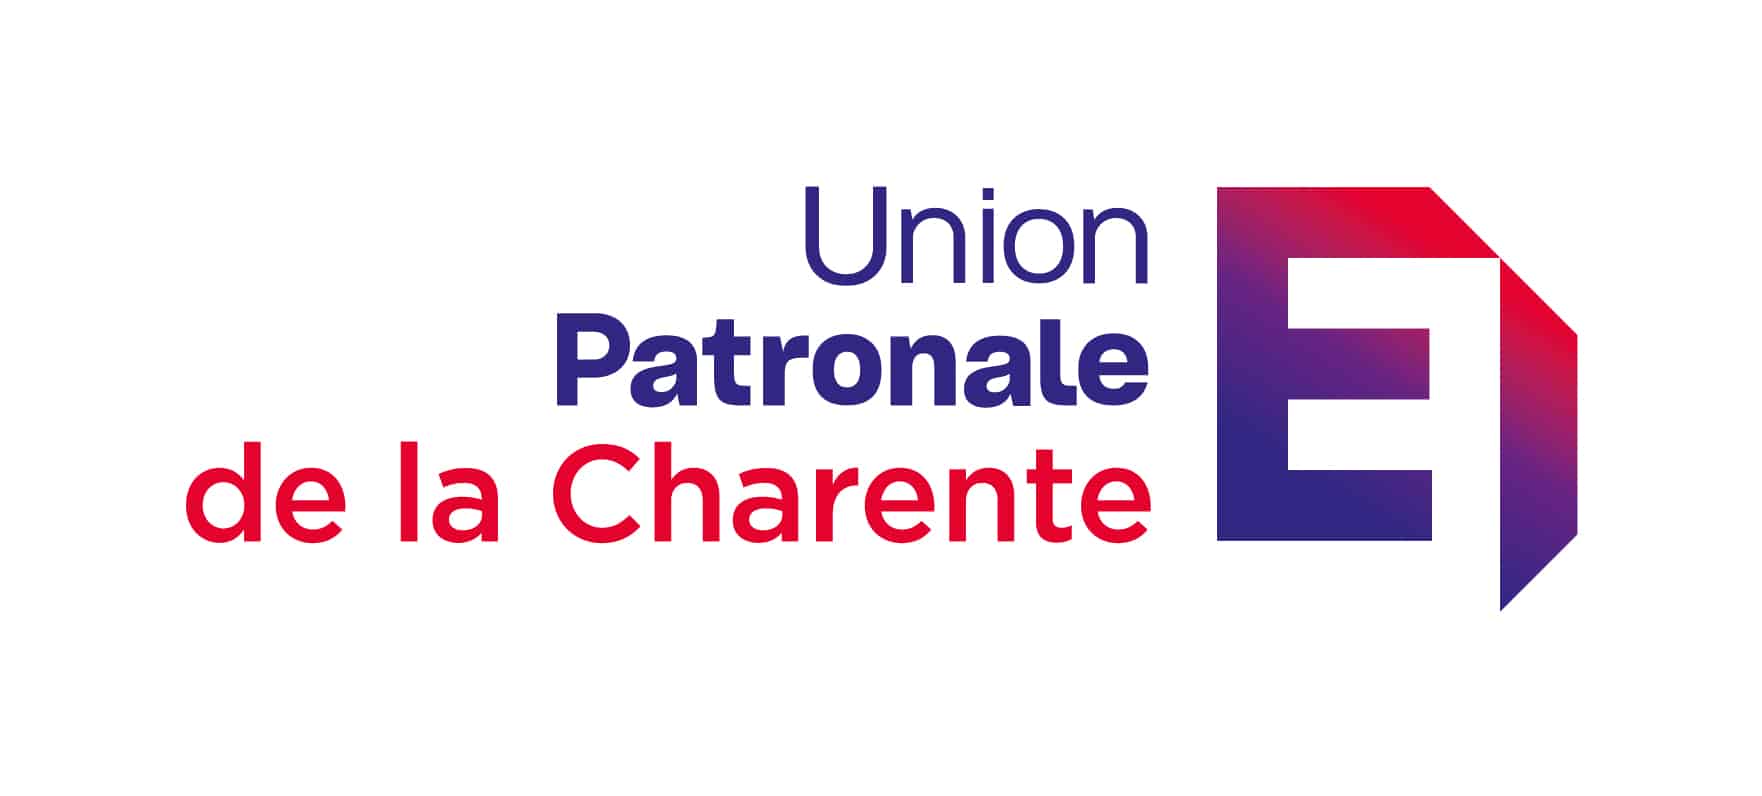 Union patronale de la Charente